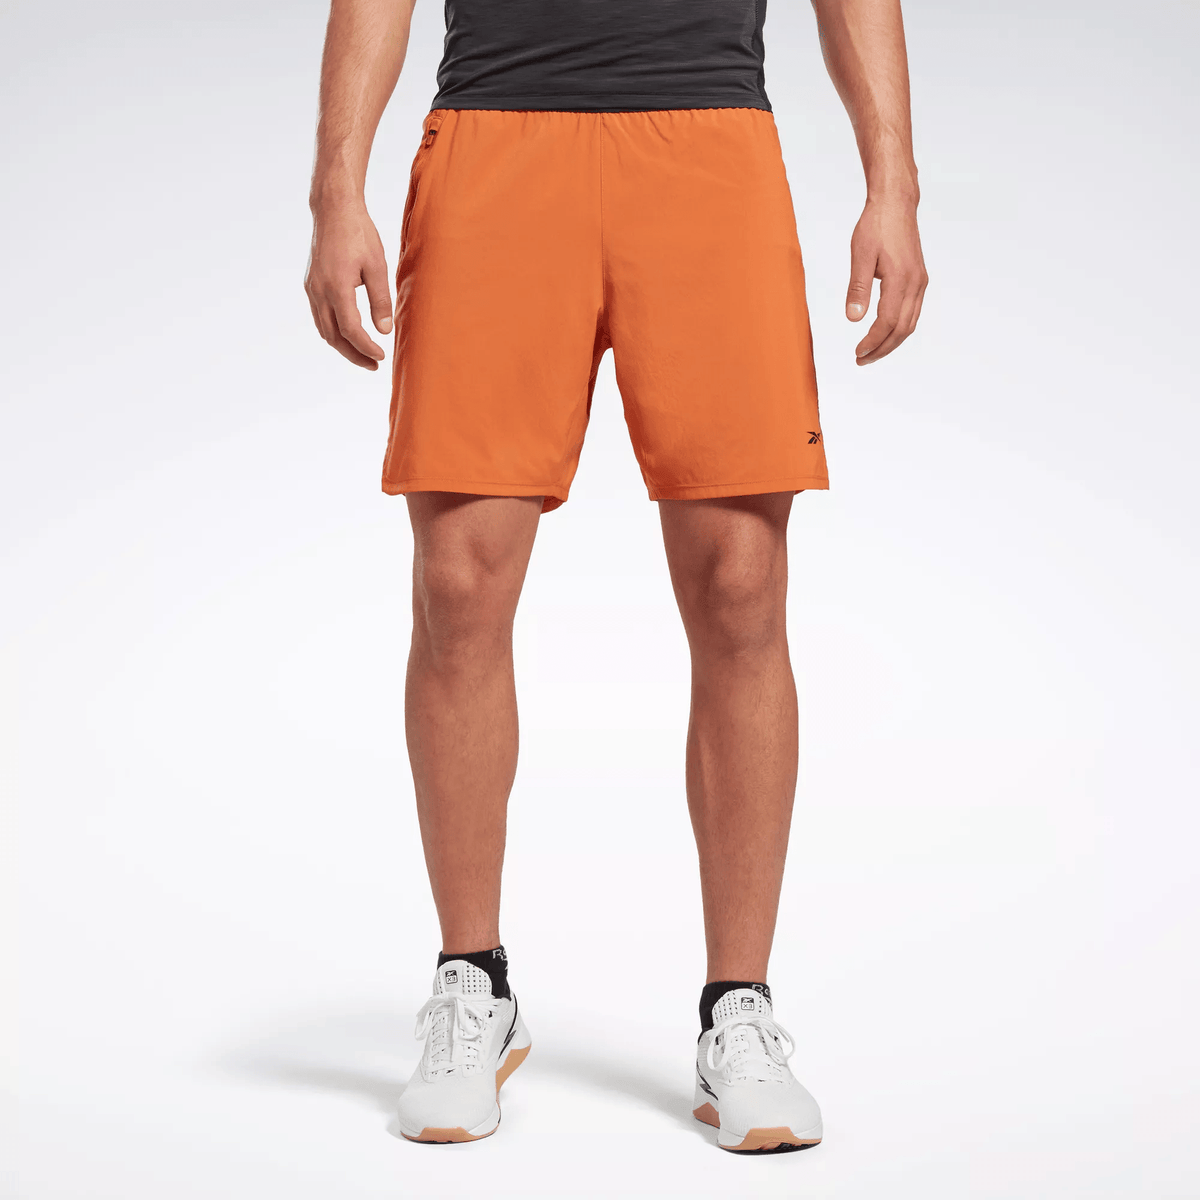 Reebok Men's Speed 3.0 Shorts Orange